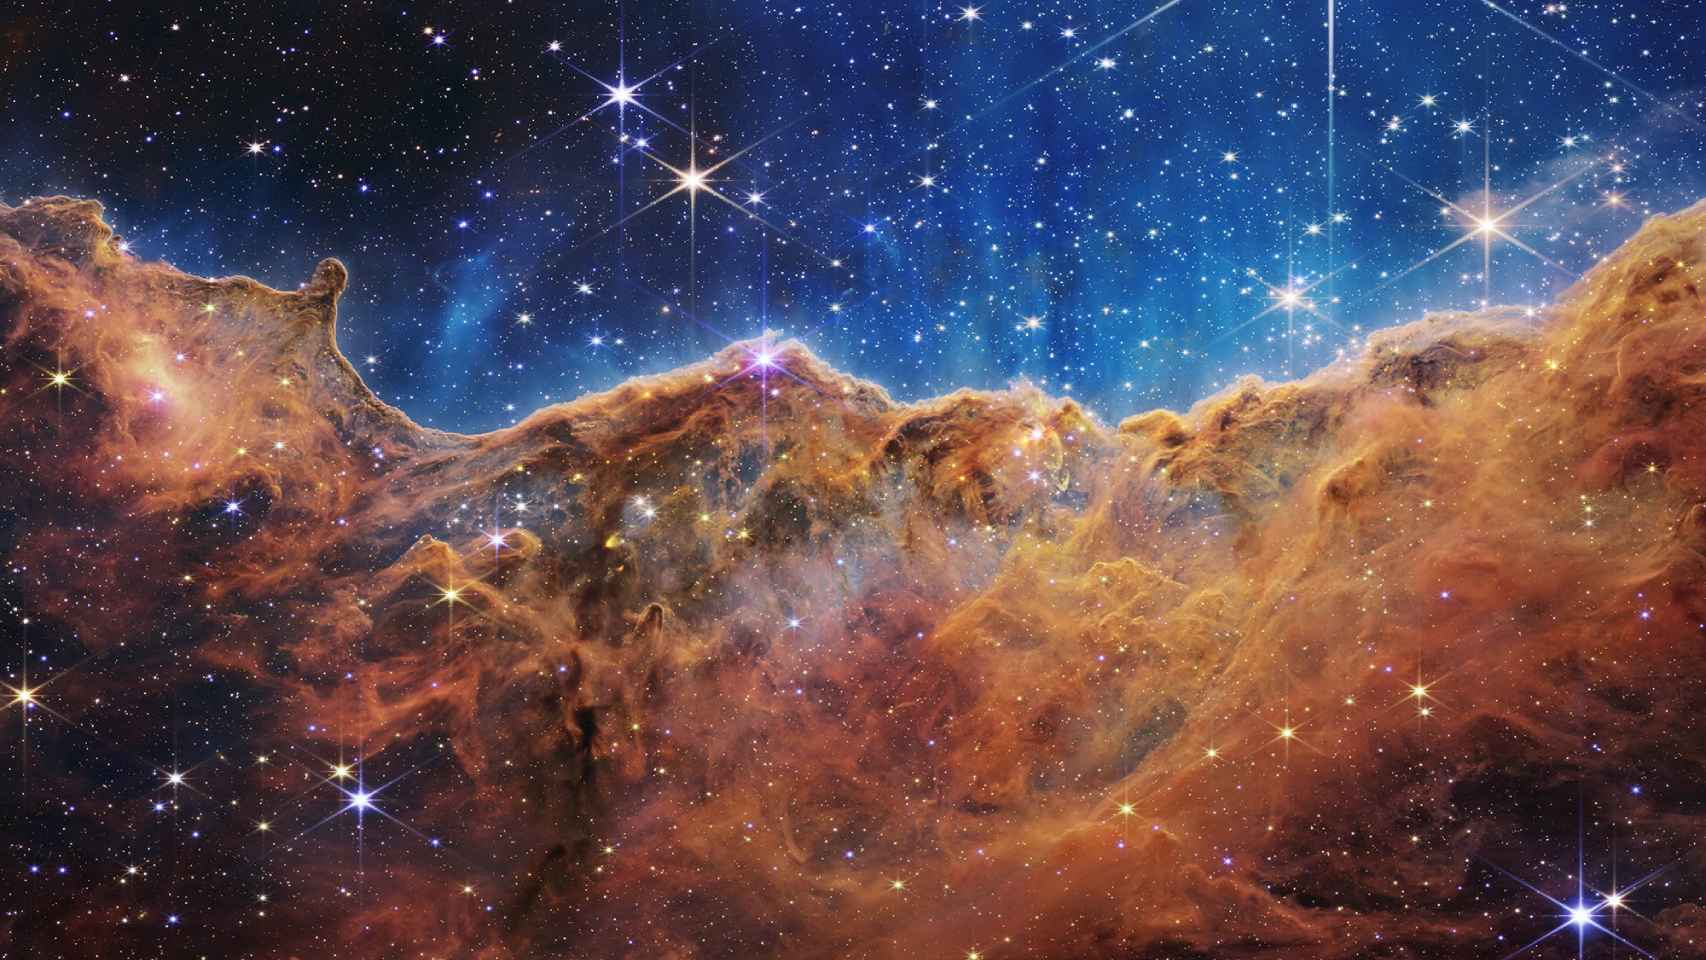 La Nebulosa de Carina tomada por el James Webb